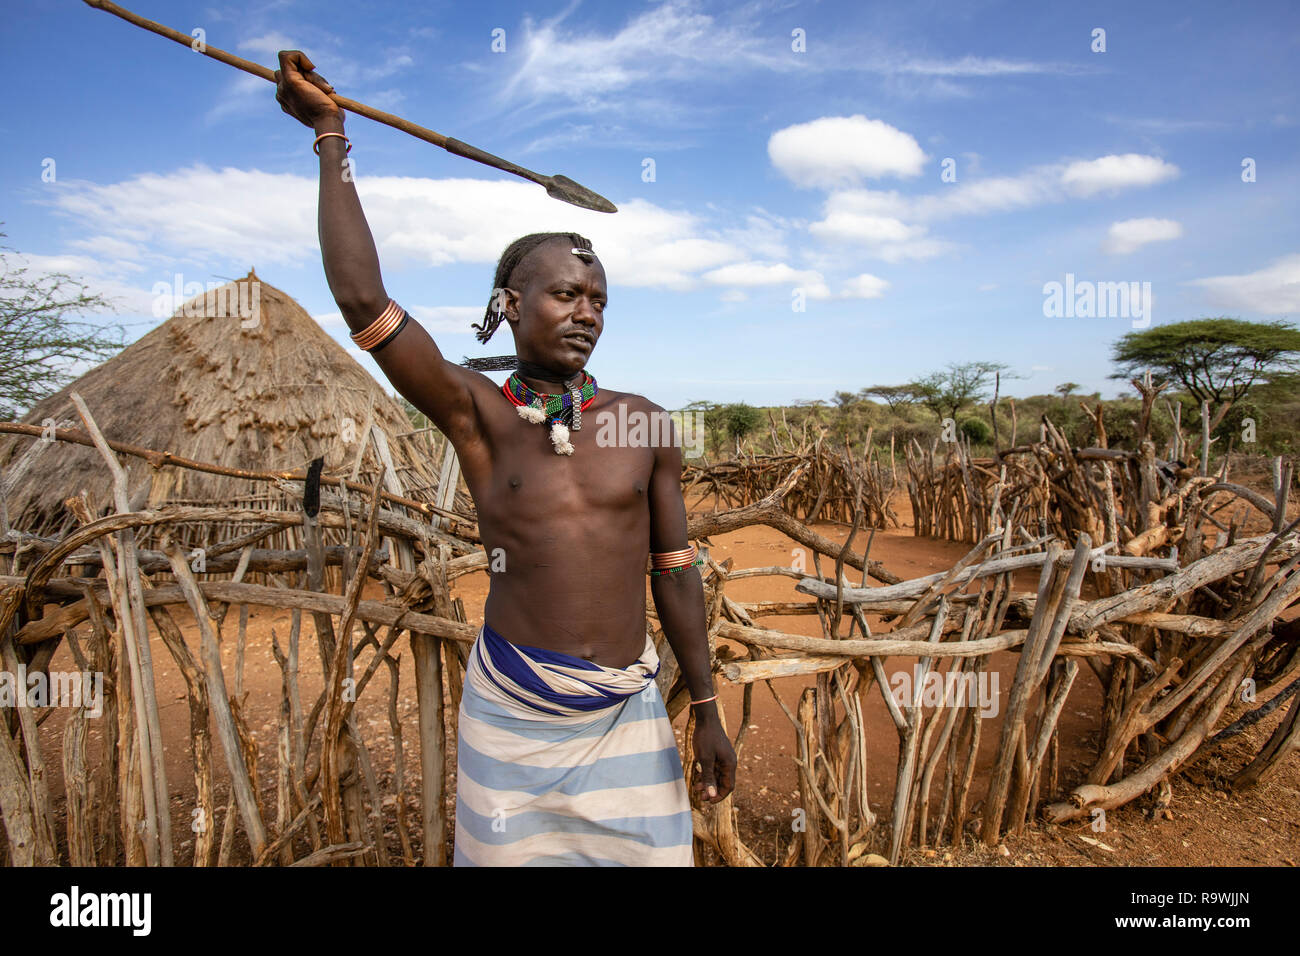 Hamar guerrero de la tribu del valle de Omo, Etiopía Foto de stock